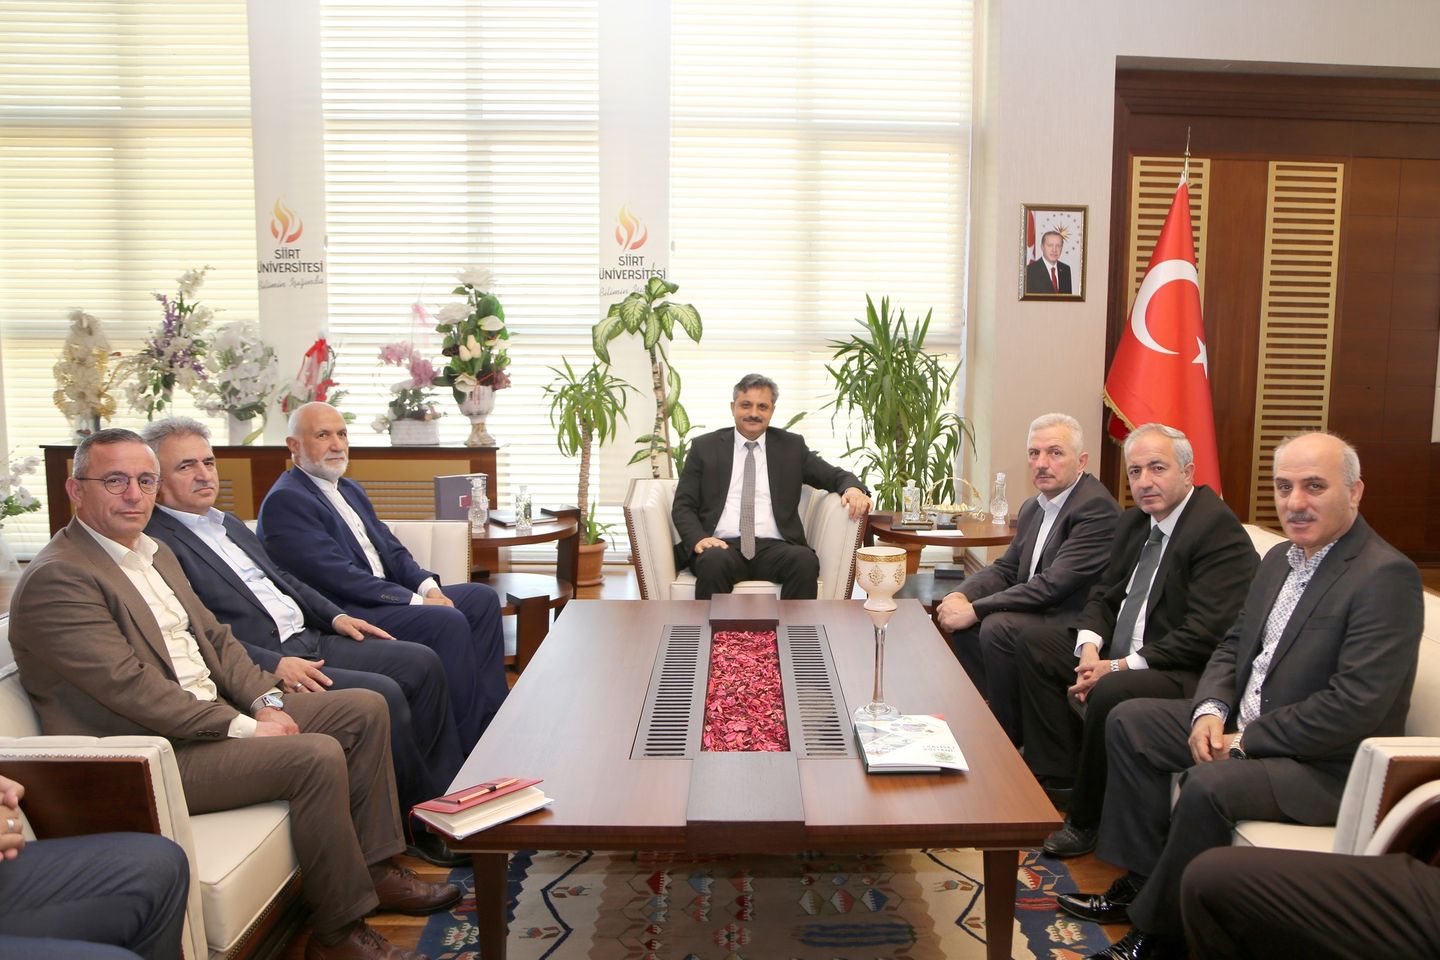 Ziyarette Siirt Üniversitesi Rektörü Prof. Dr. Nihat Şındak'ı Siirt Vakfı Heyeti Makamında Ağırladı